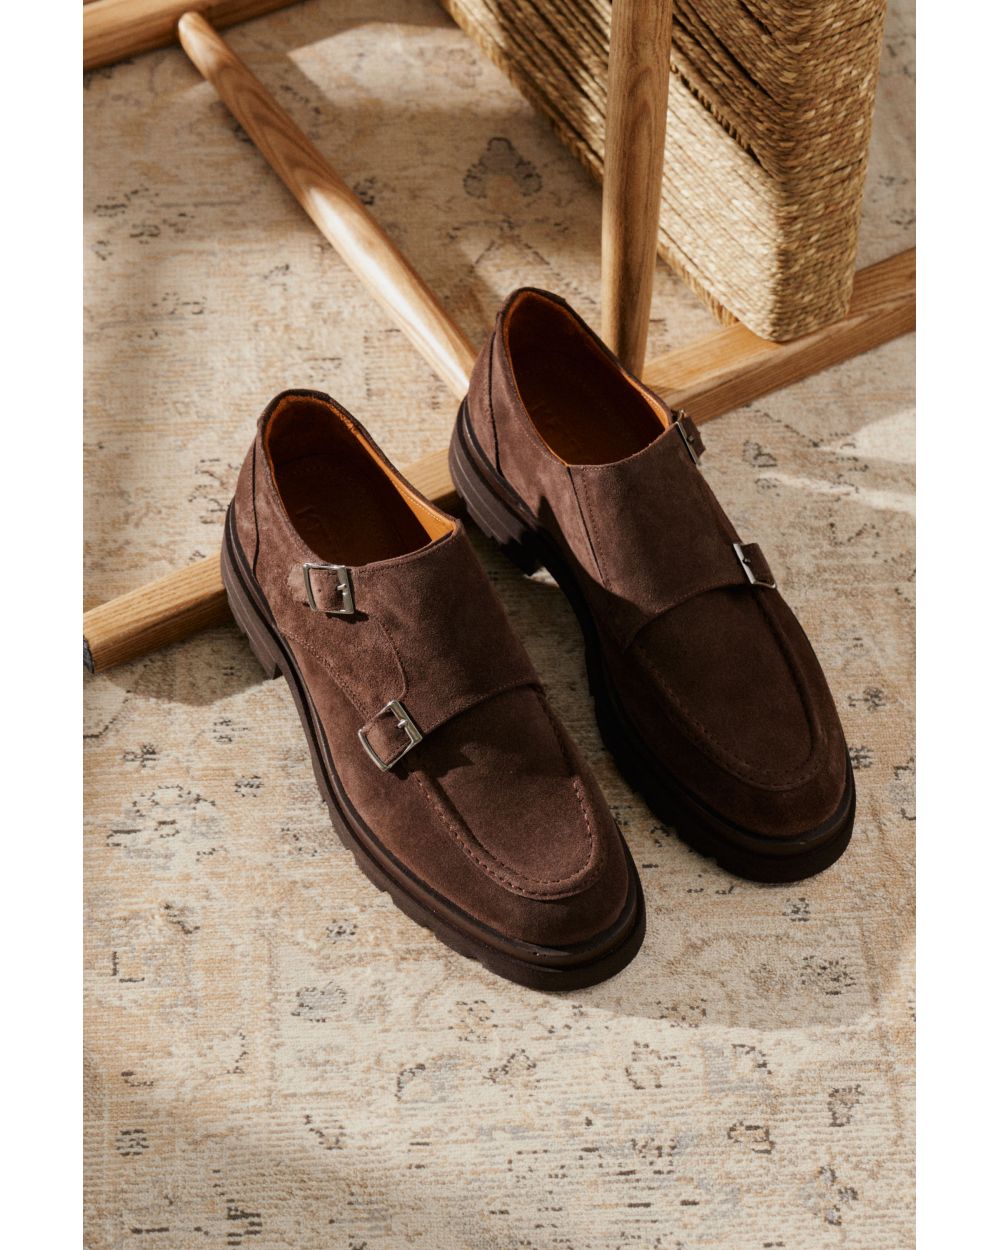 Туфли мужские дабл-монки коричневые, замшевые, высокая подошва